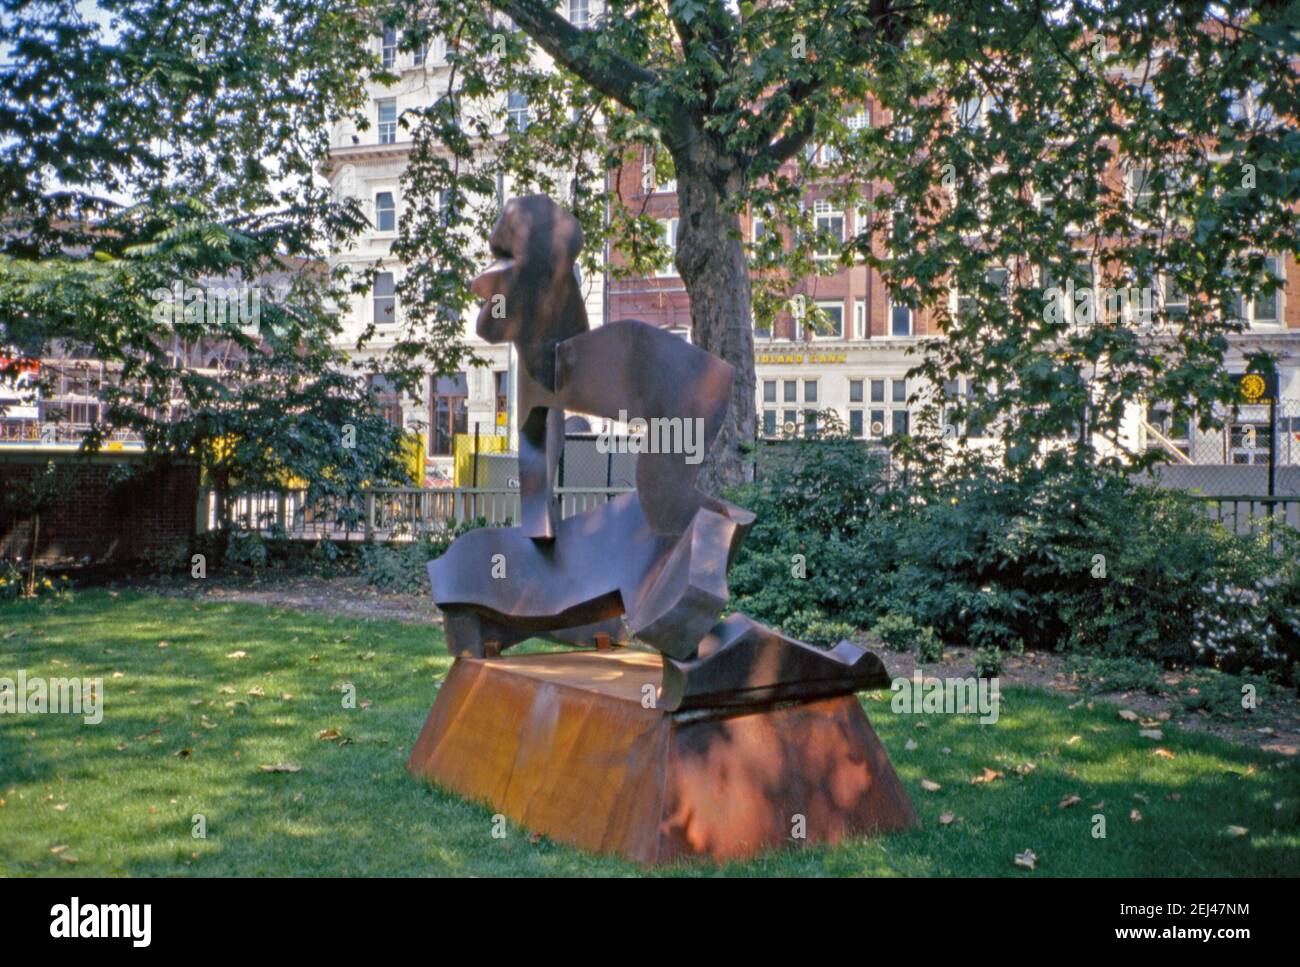 Eine Metallskulptur aus dem Jahr 1989, ‘Wrestlers’, von Allen Jones, City of London, London, England, Großbritannien 1993. Dies war Teil der ‘Art in the City’ von 1993 und zielte darauf ab, Skulpturen zwischen den Grünflächen und der unverwechselbaren Architektur der City of London zu setzen. Allen Jones (geb. 1937) ist vor allem für seine Arbeiten in der britischen Pop-Art-Bewegung der späten 1960er Jahre bekannt, darunter Lithographie, Malerei, Zeichnung und Skulptur – eine Vintage-Fotografie der 1990er Jahre. Stockfoto